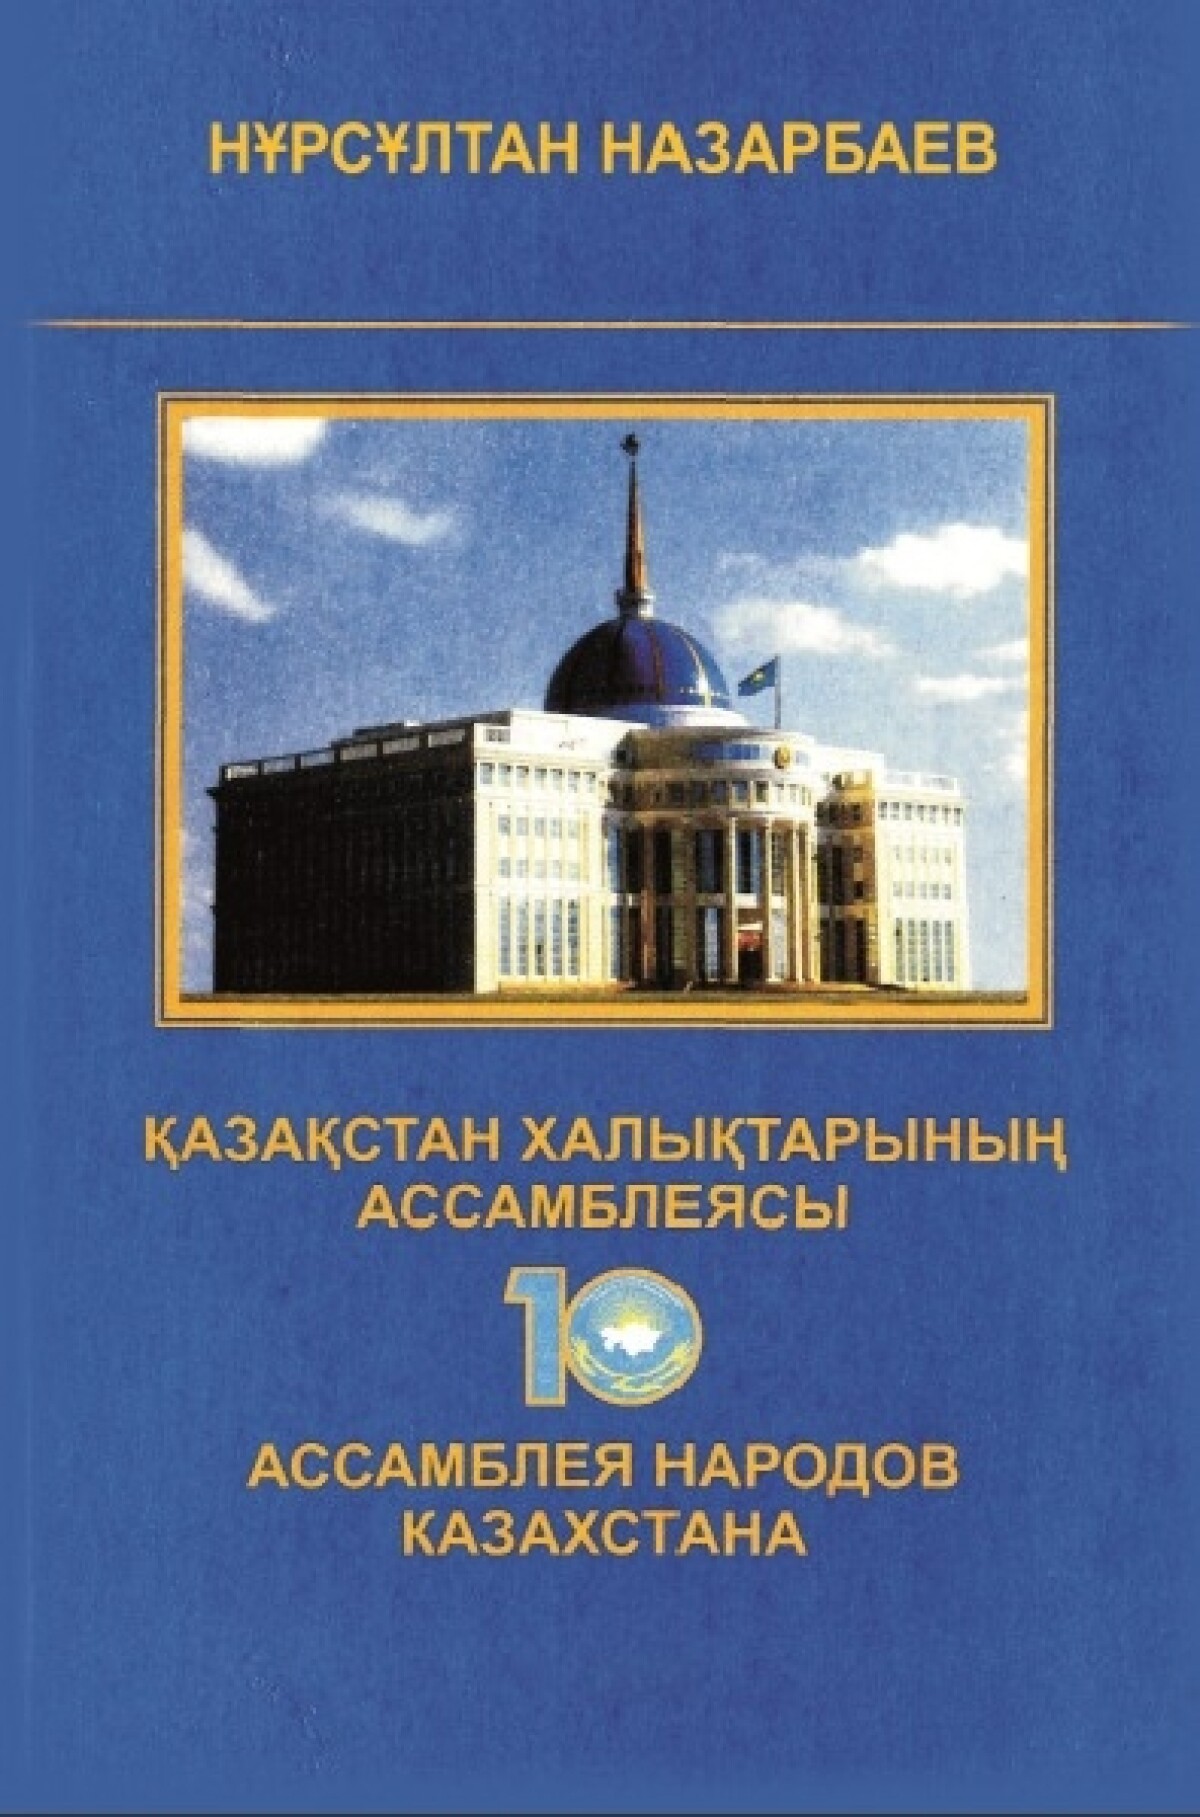 10 лет. Ассамблея народов Казахстана